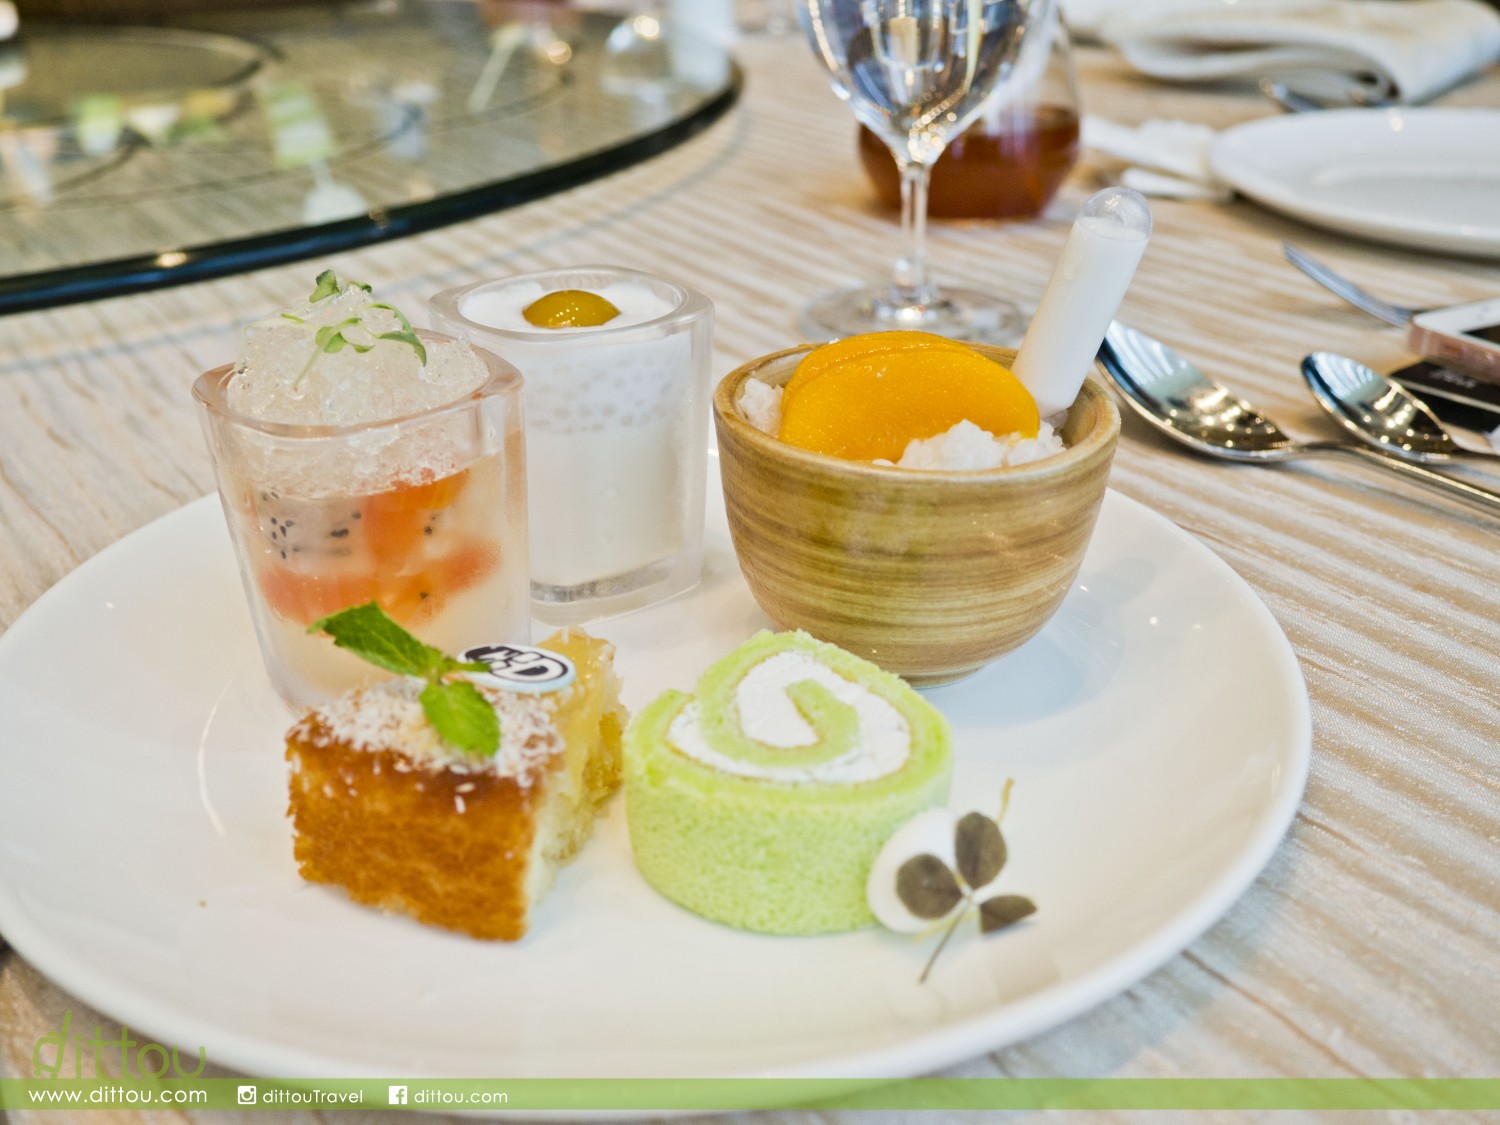 （左上起）火龍果木瓜金柚果凍、芒果椰子西米布甸、香芒慕絲糯米飯；（左下起）椰子菠蘿蛋糕、斑蘭椰子卷蛋糕